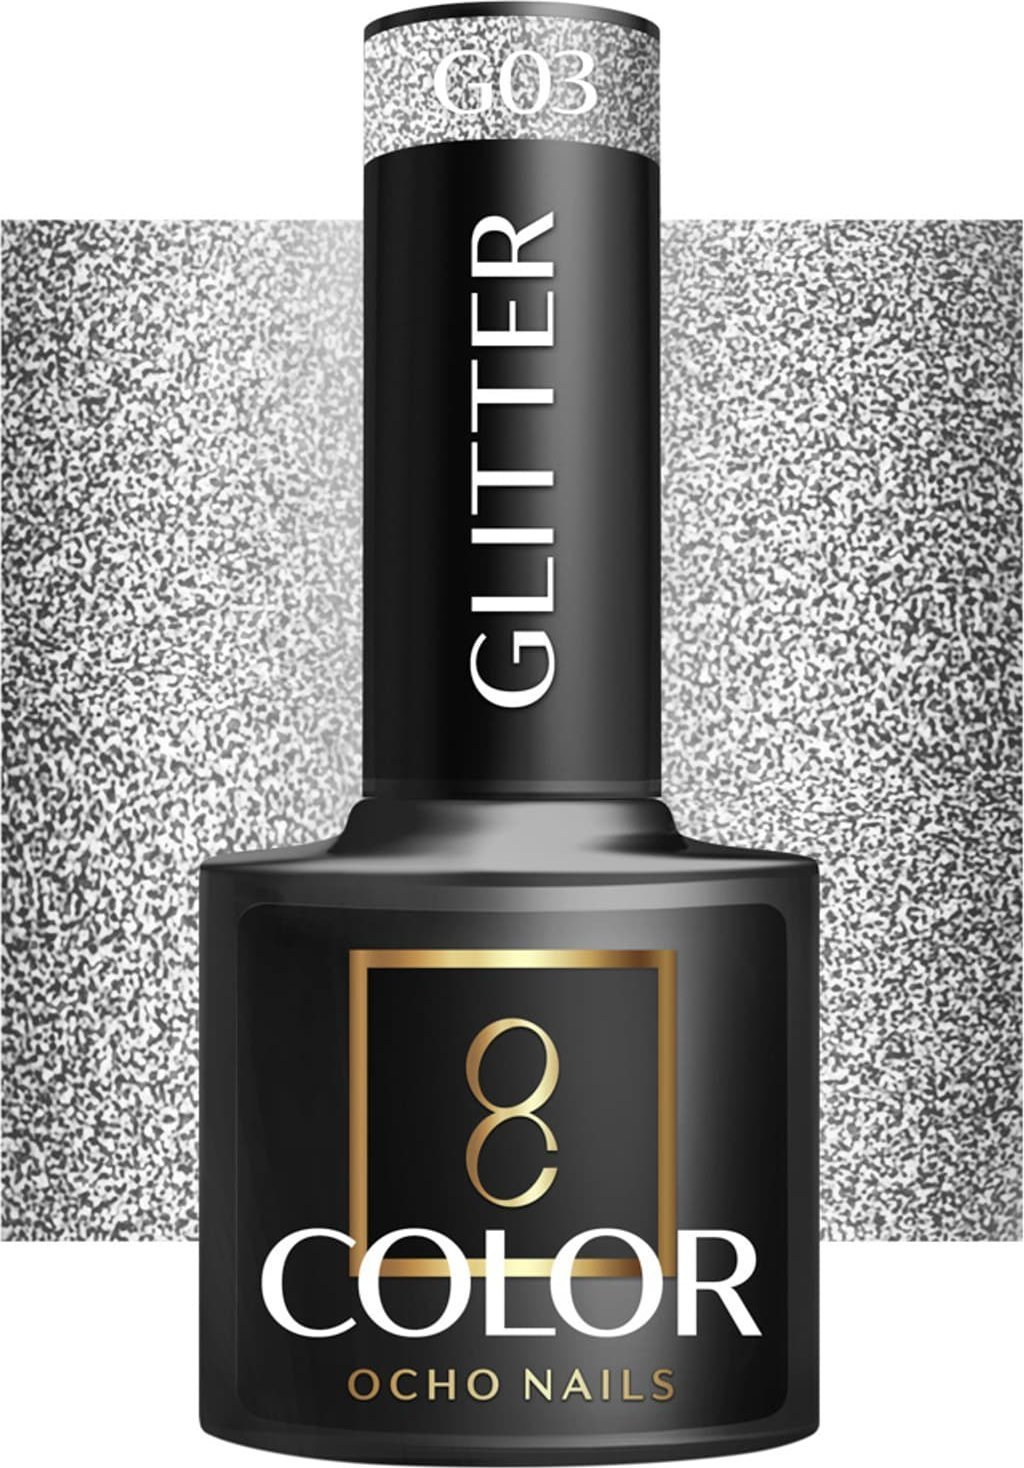 Activeshop OCHO NAILS Oc gel glitter G03 -5 g